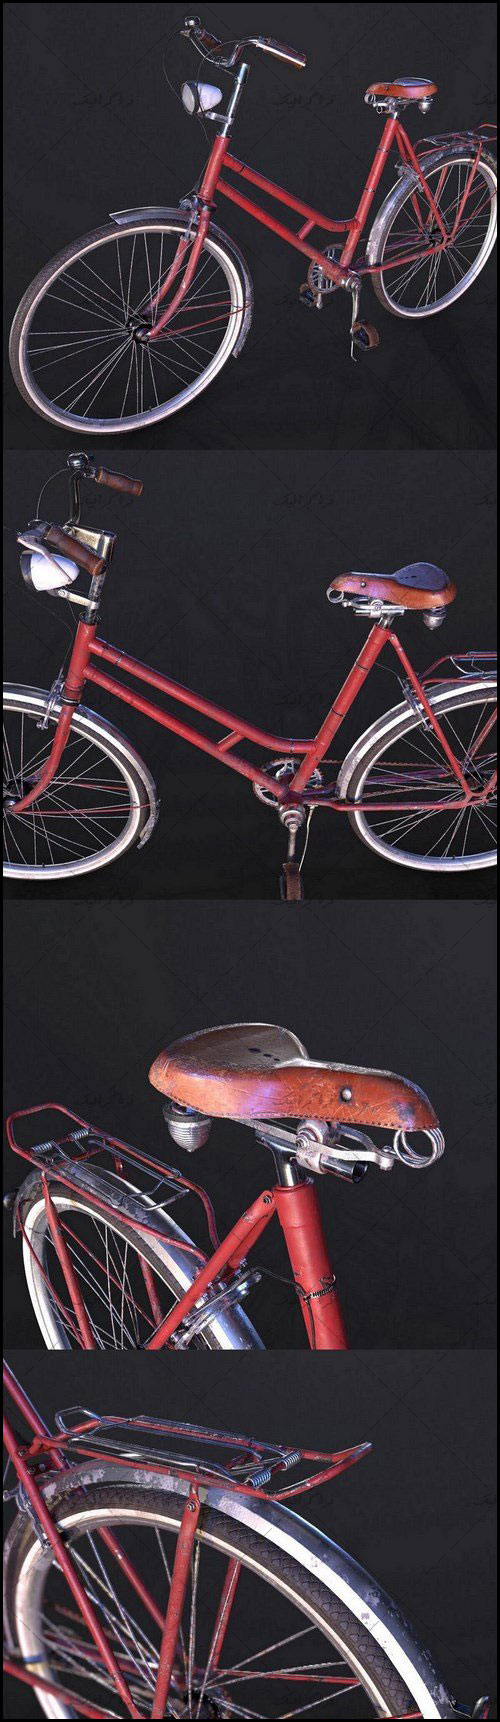 دانلود مدل سه بعدی دوچرخه قرمز قدیمی